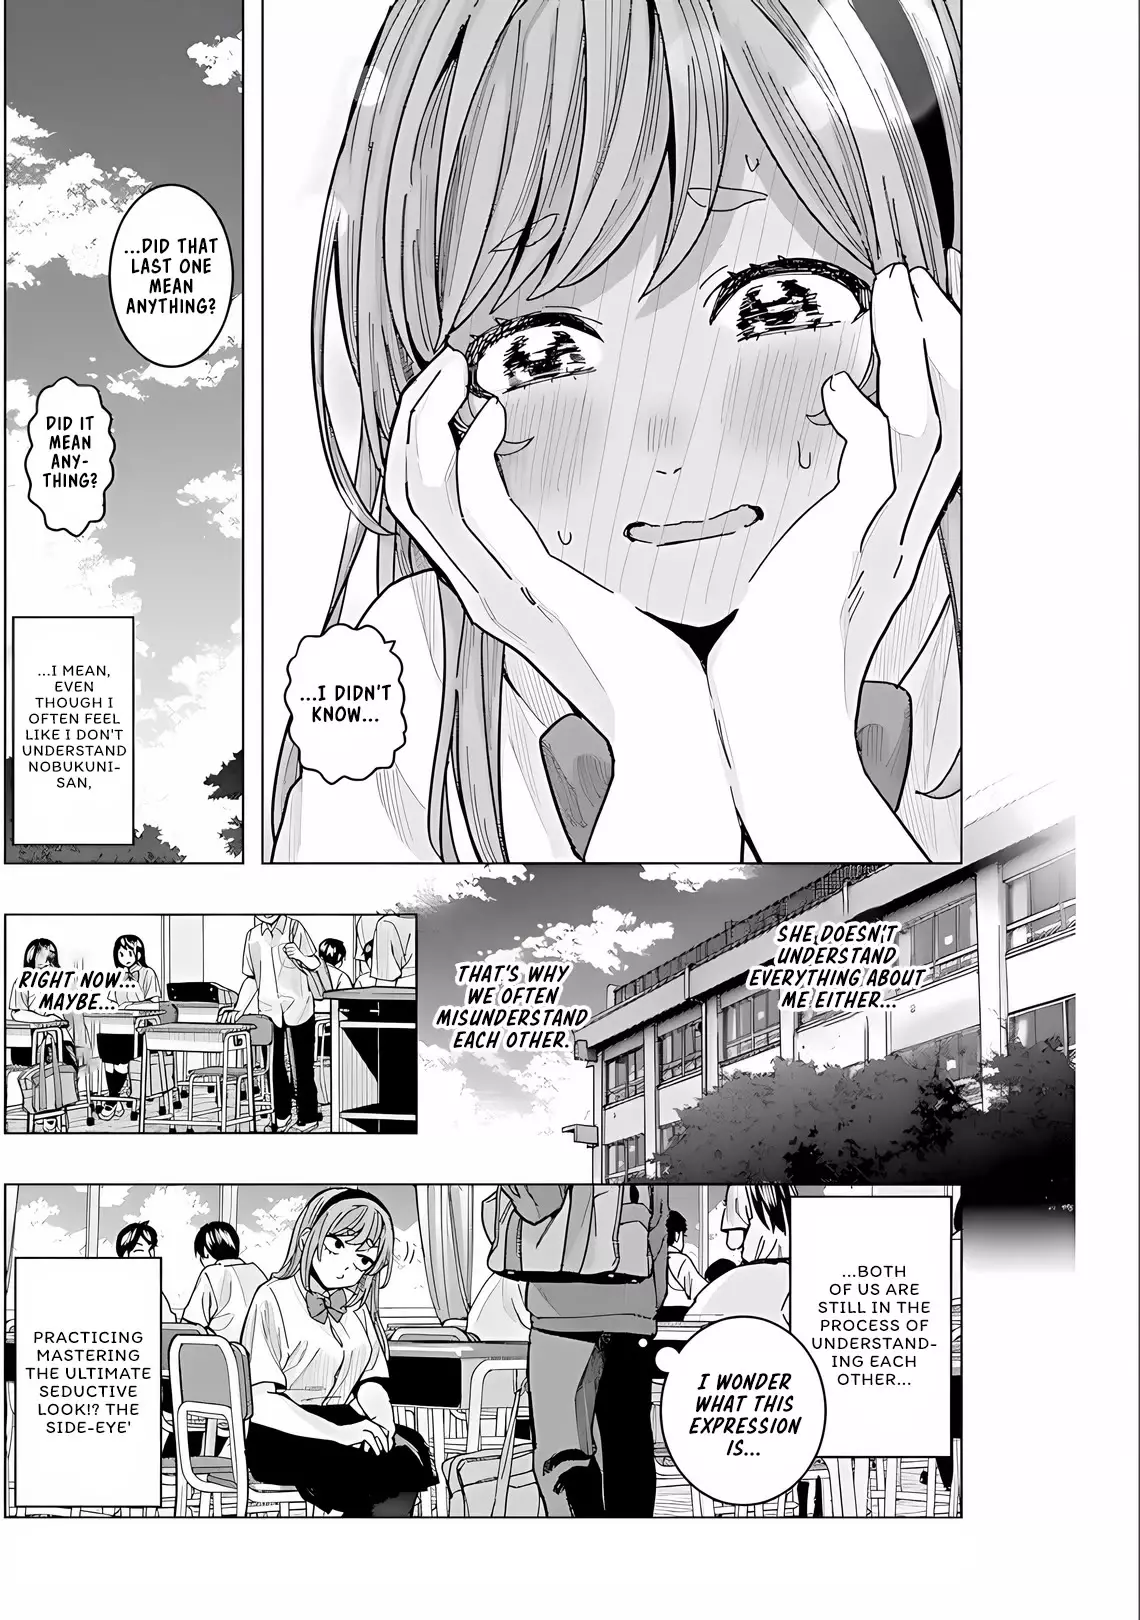 "nobukuni-San" Does She Like Me? - 27 page 15-9e8adc8b